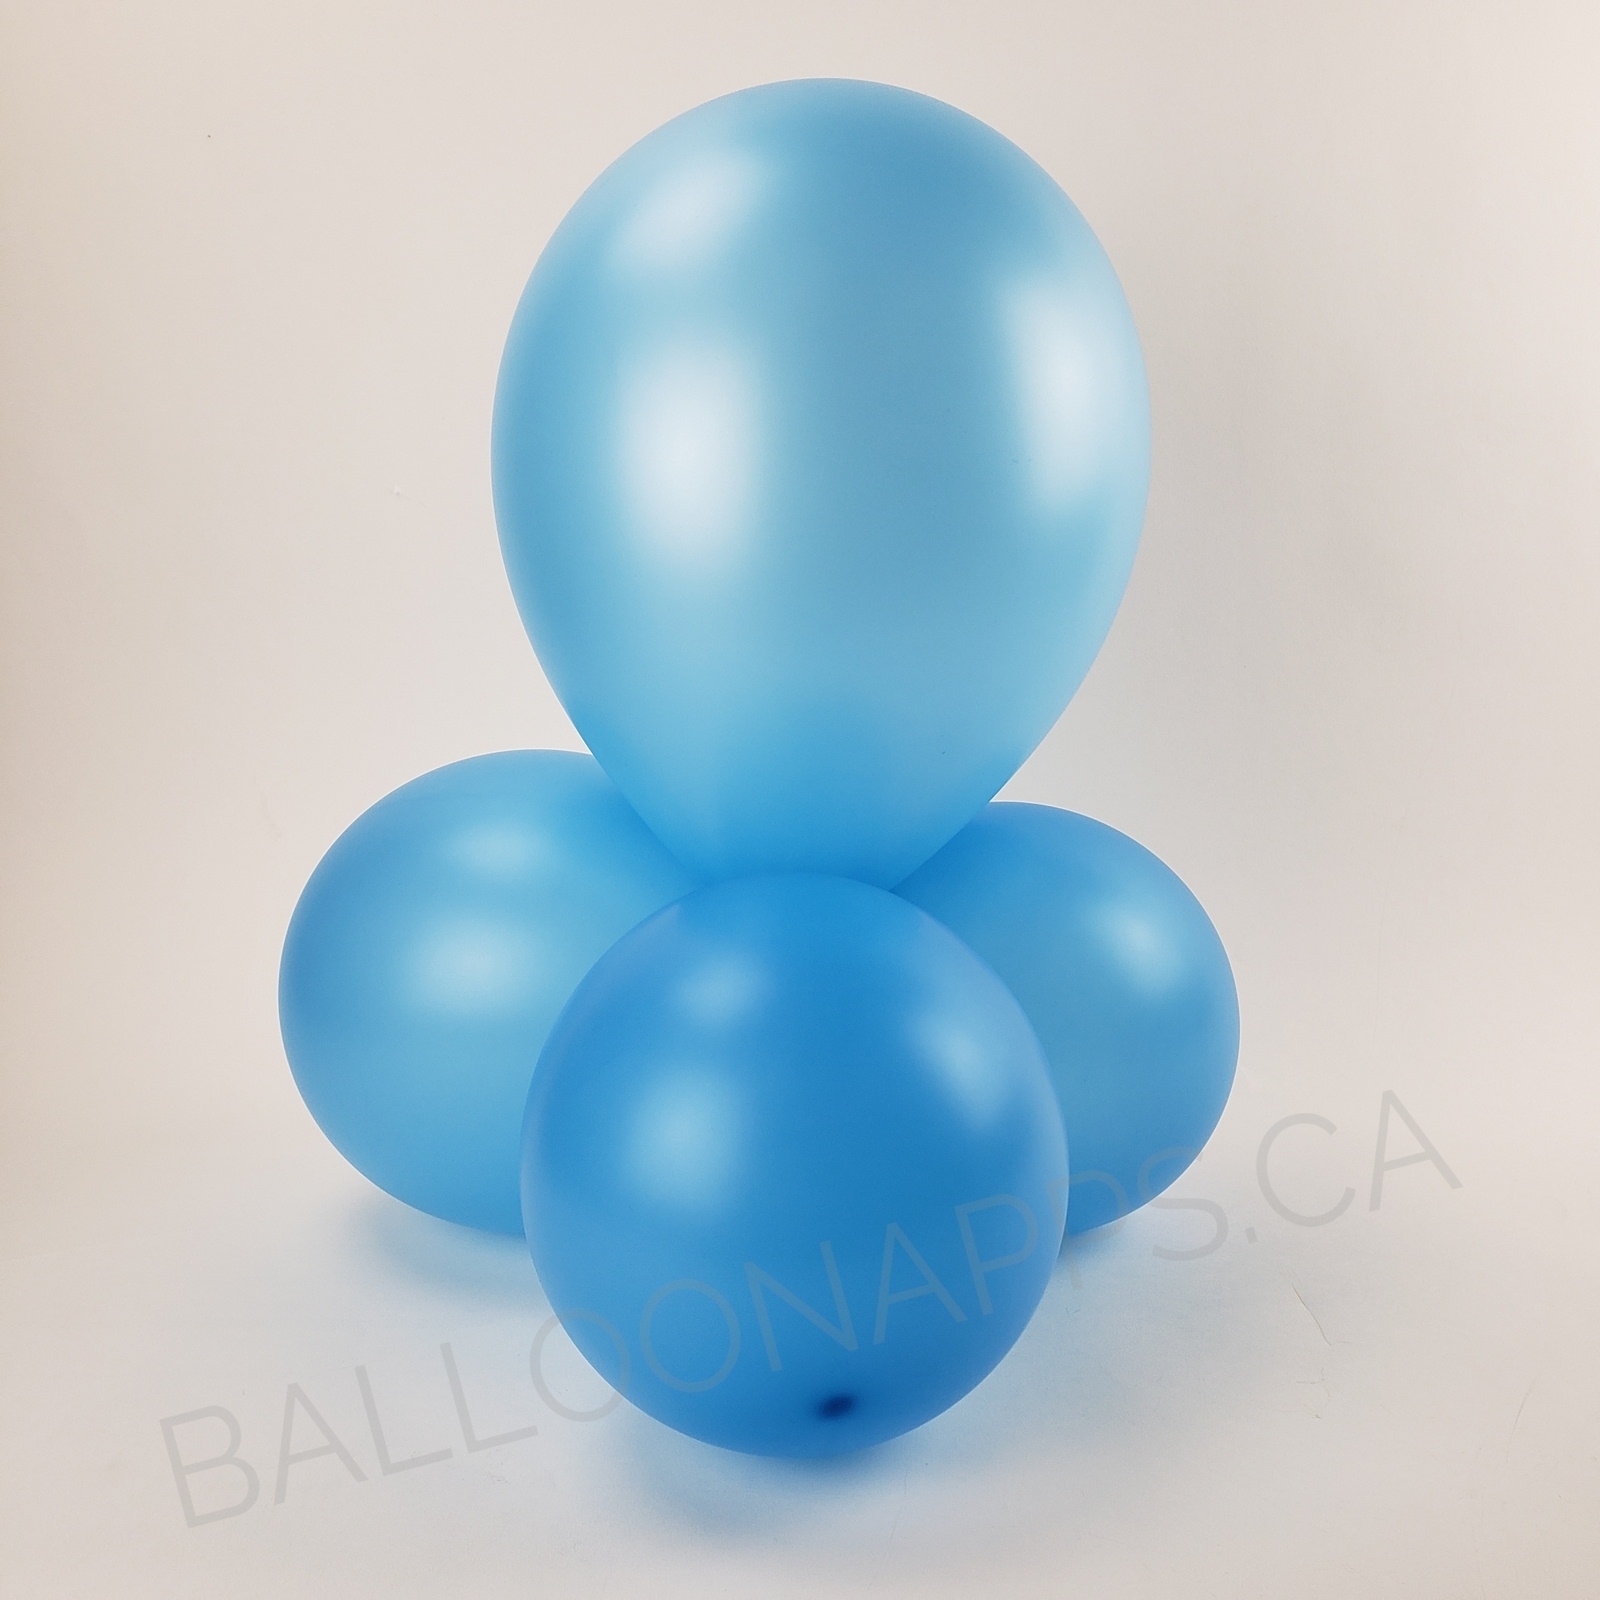 balloon texture BET (50) 260 Neon Blue balloons